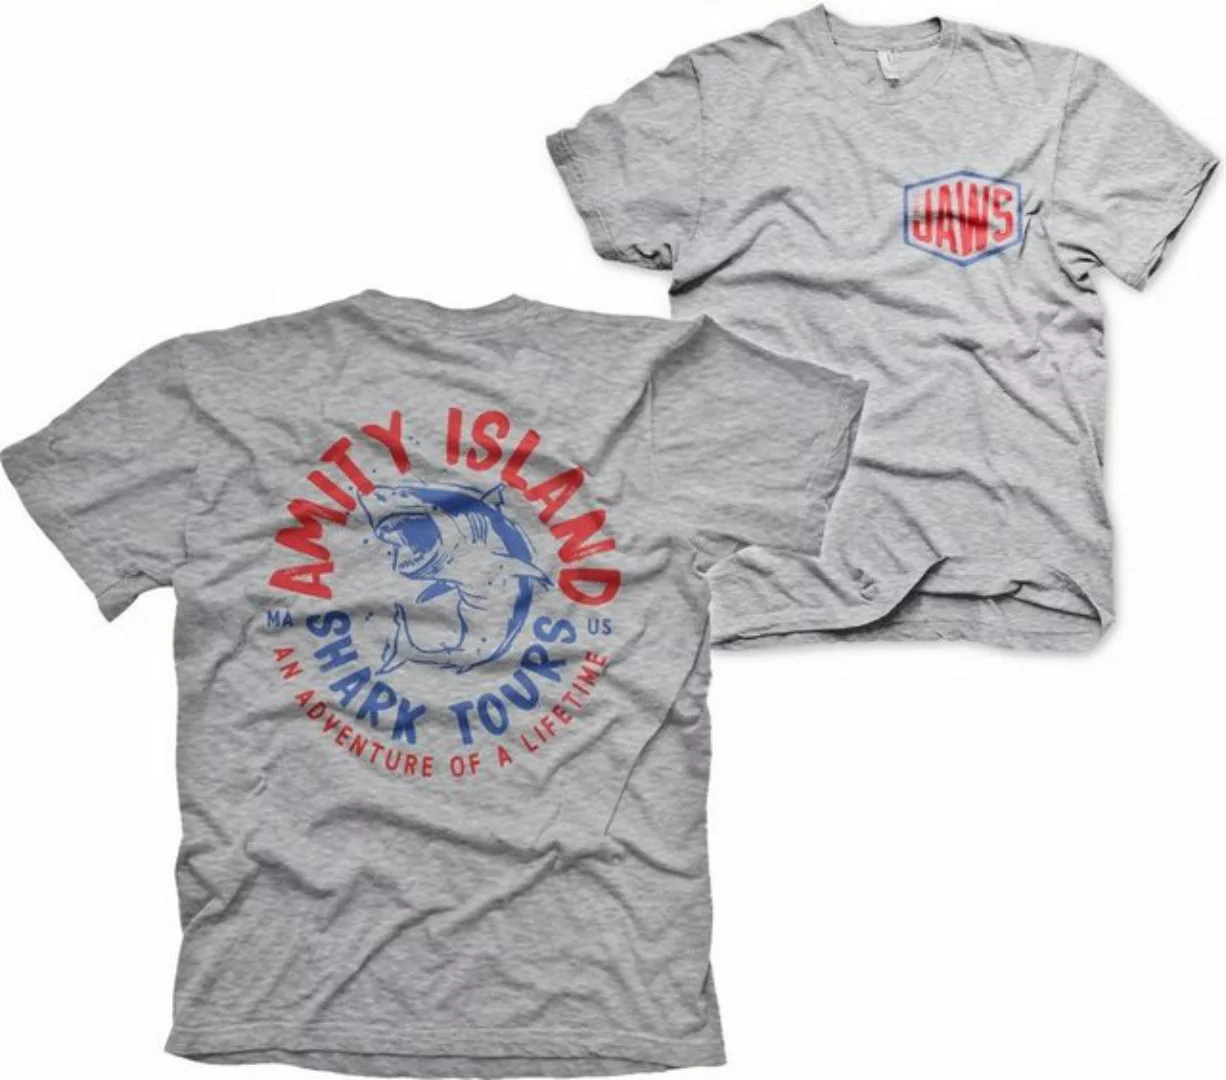 Jaws T-Shirt günstig online kaufen